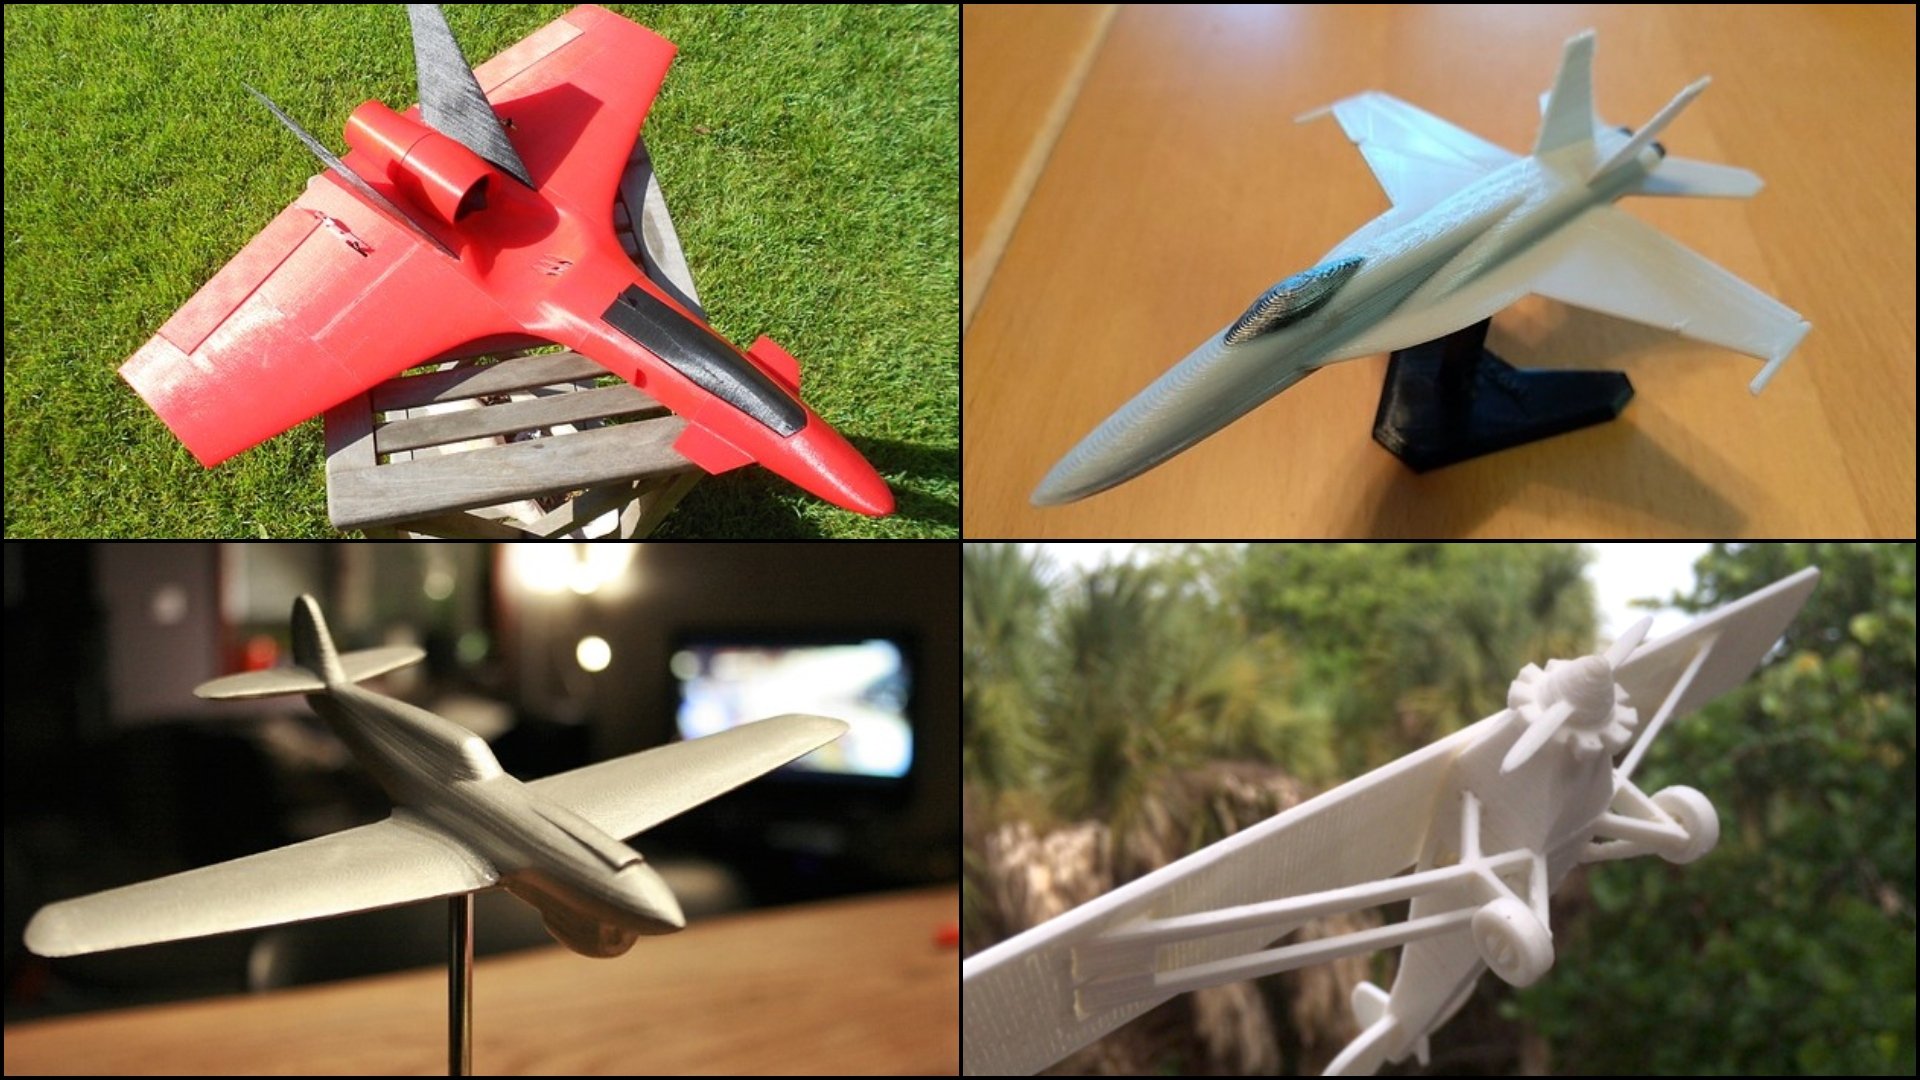 3d printed airplane models